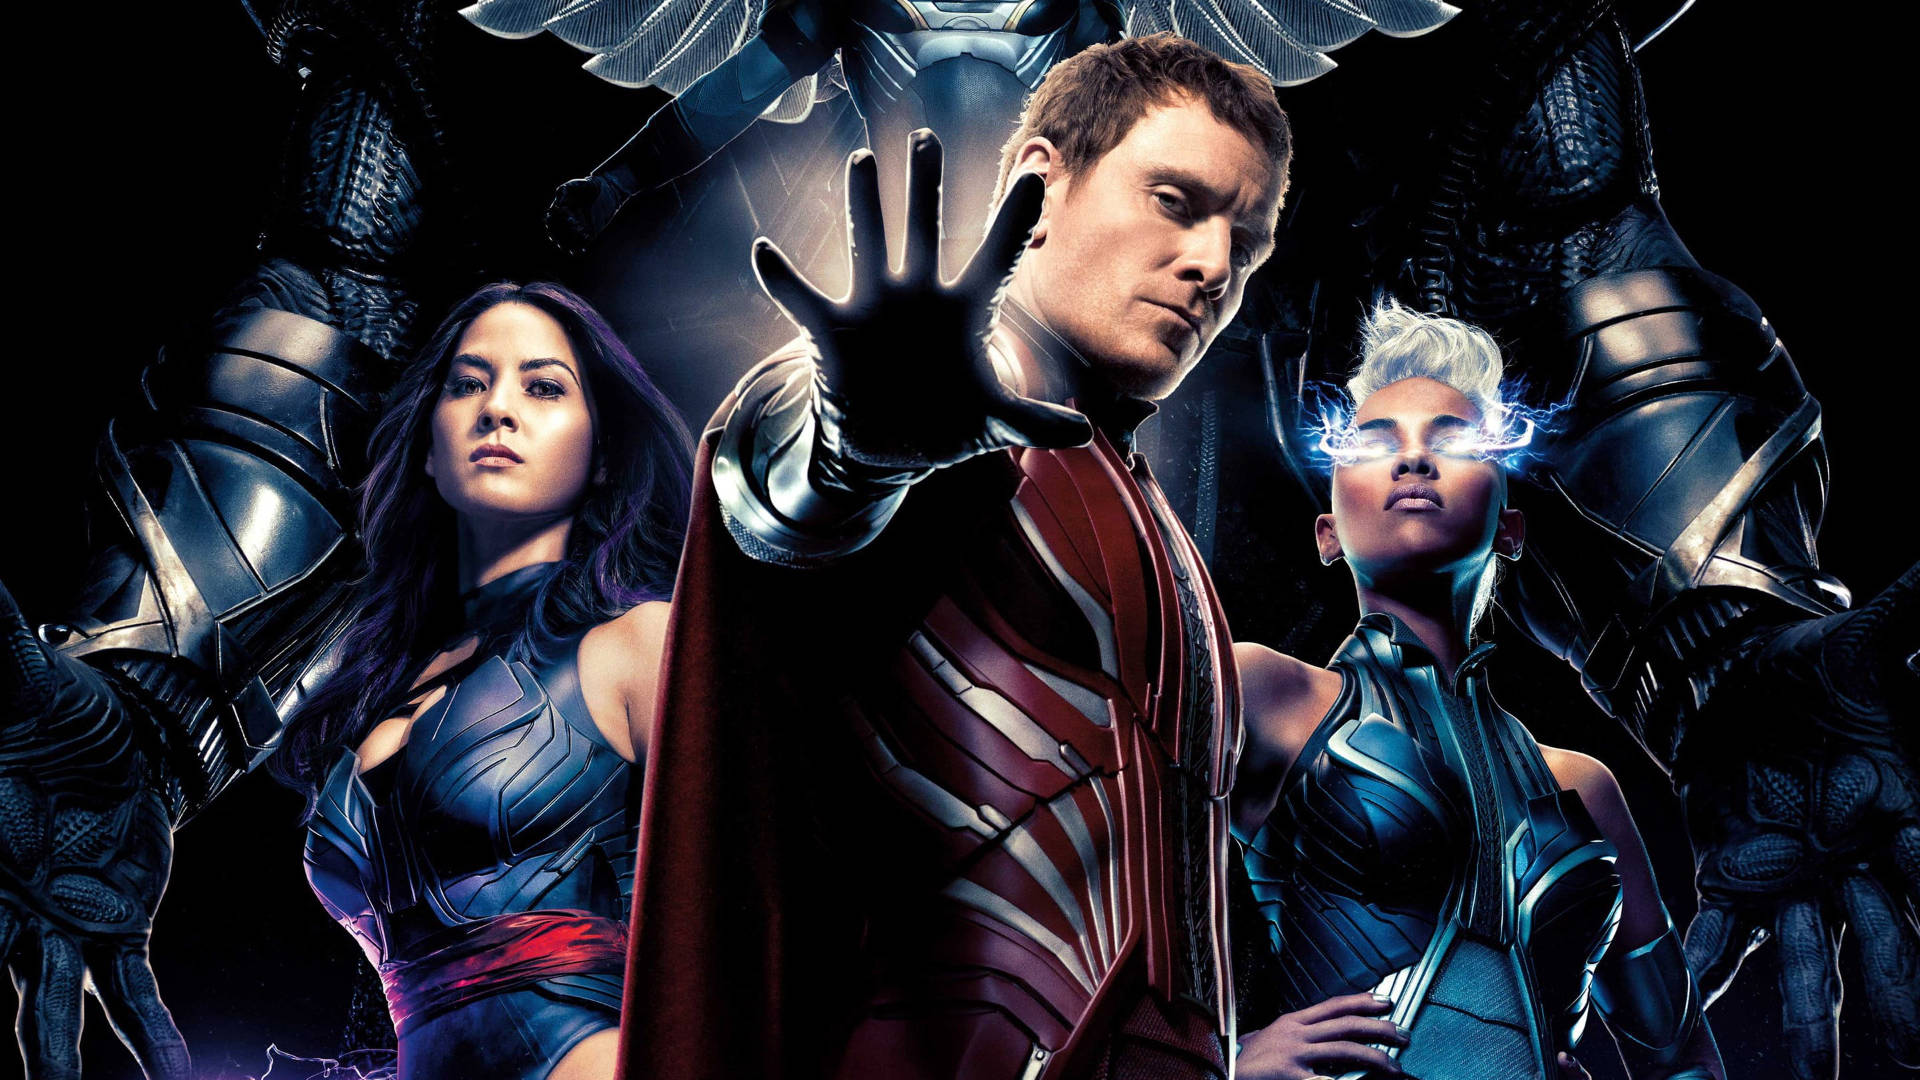 Michael Fassbender X-men Apocalypse Background